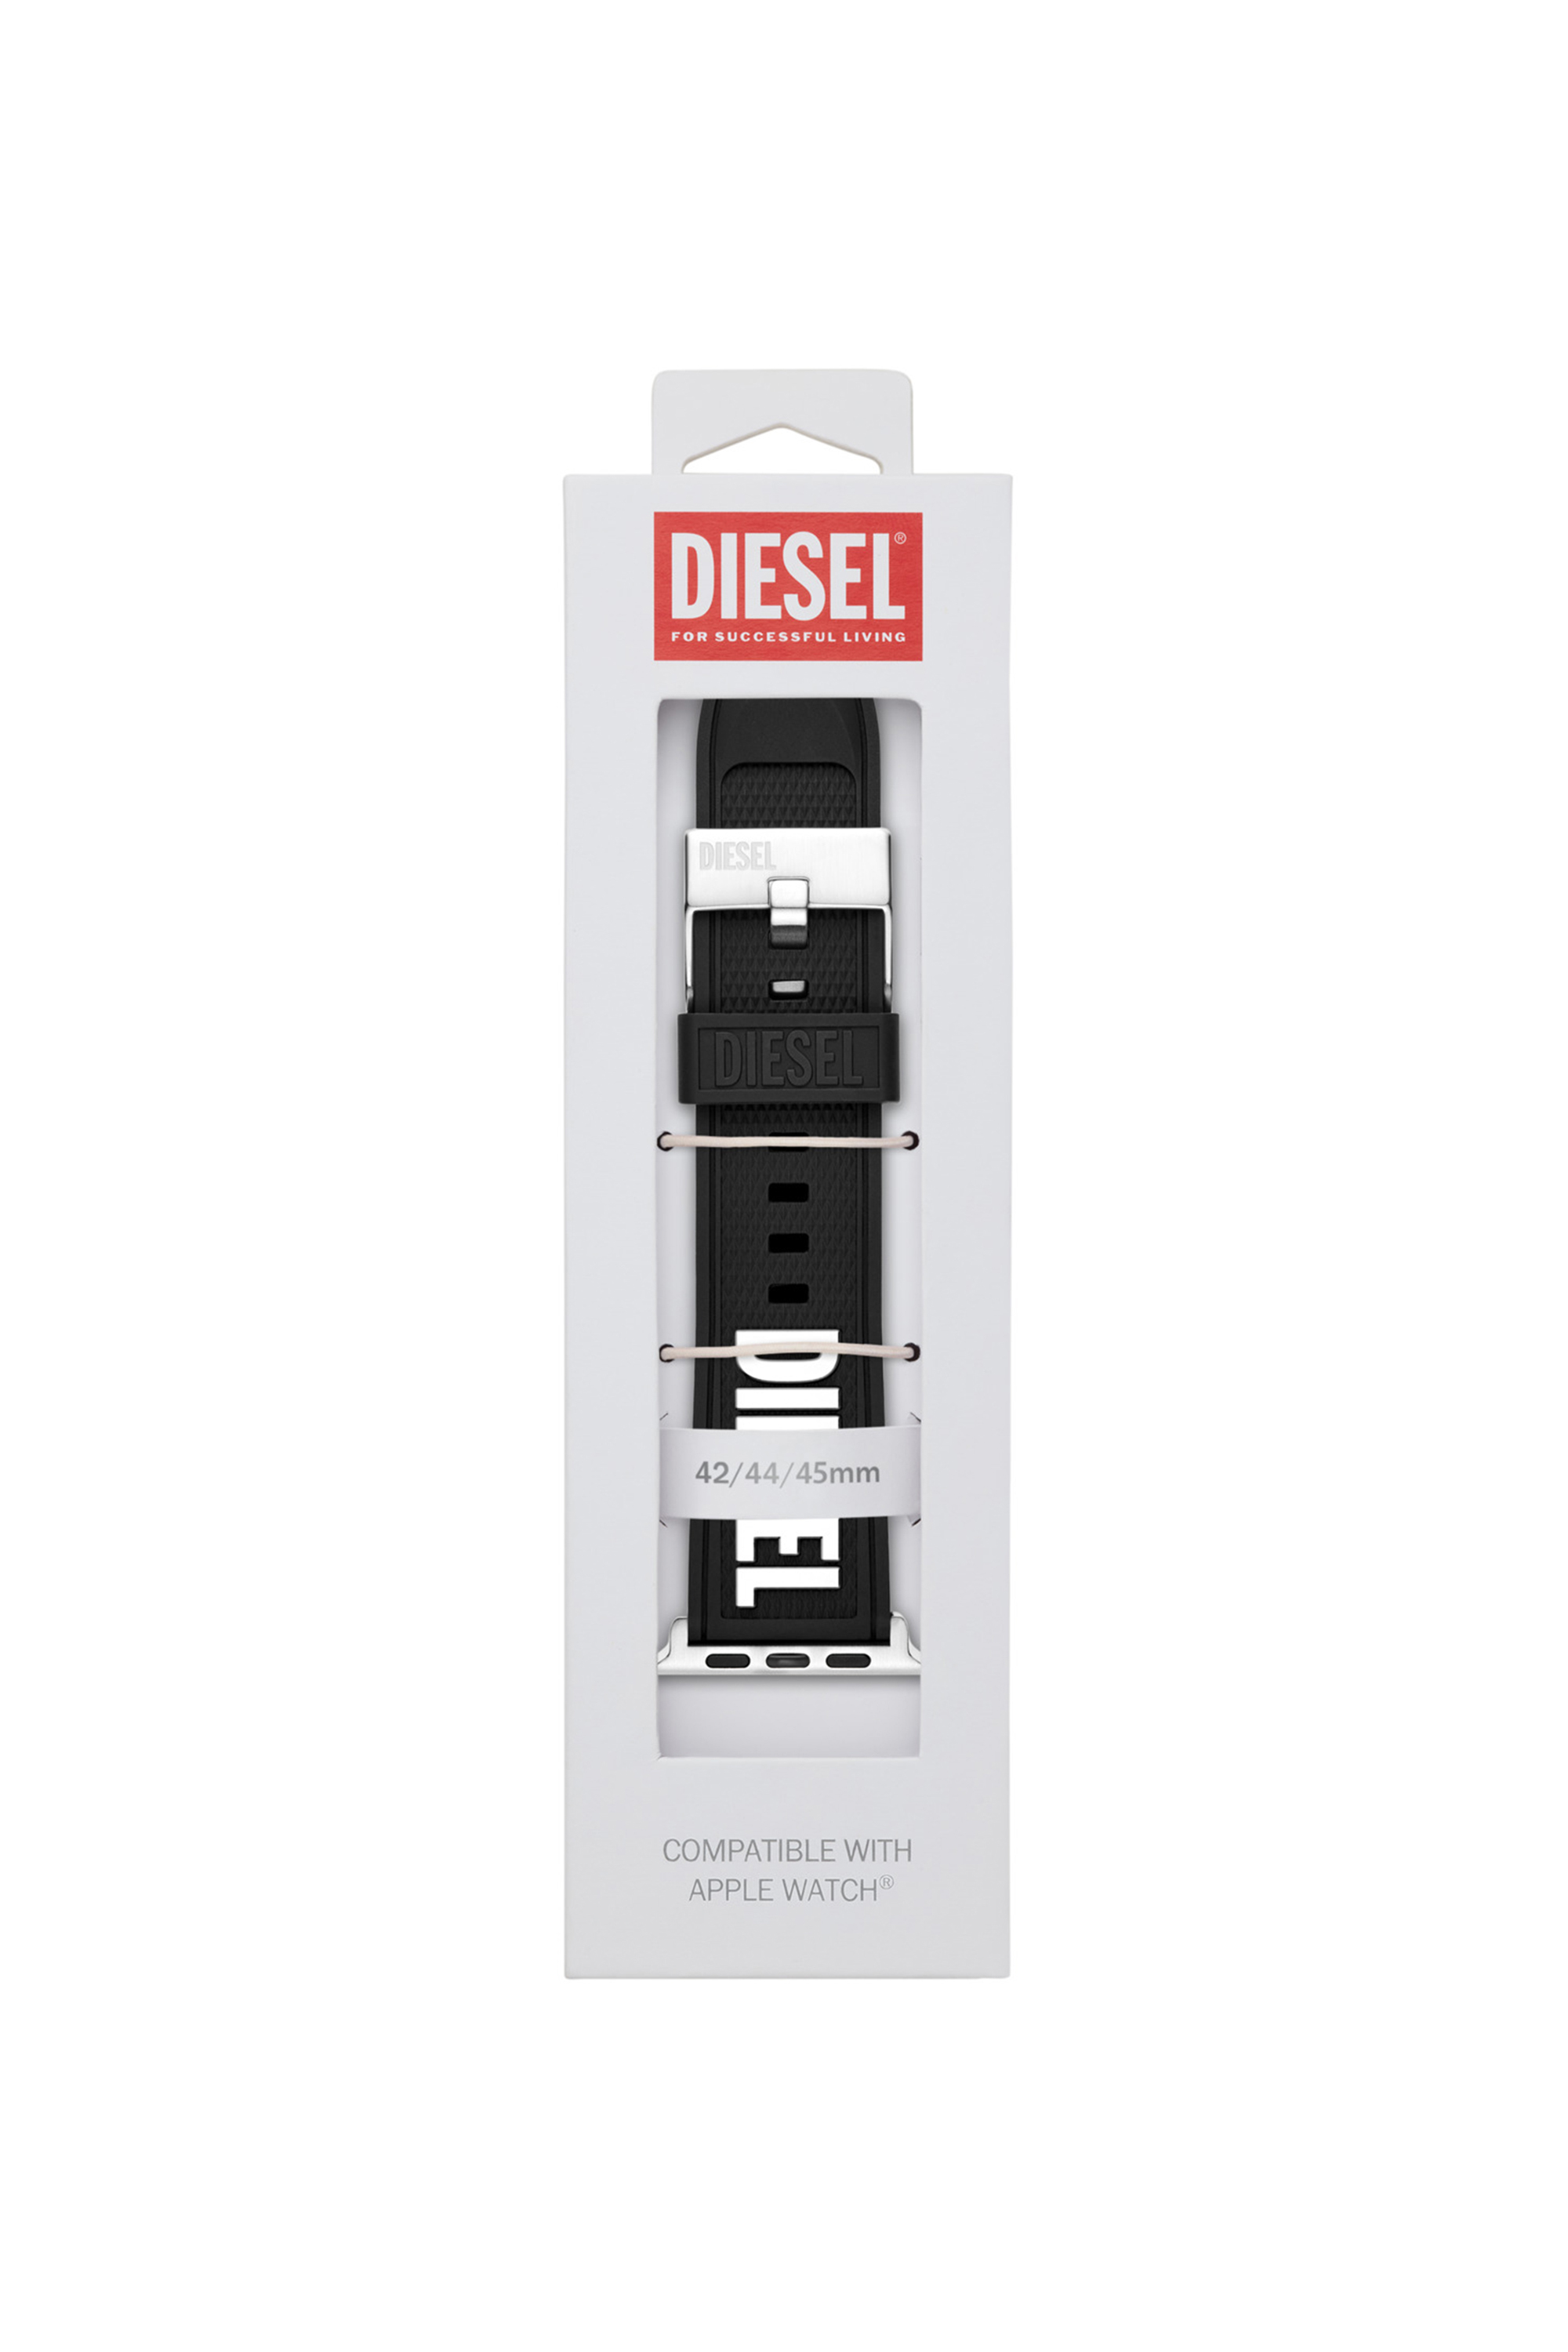 Diesel - DSS011, Black - Image 2